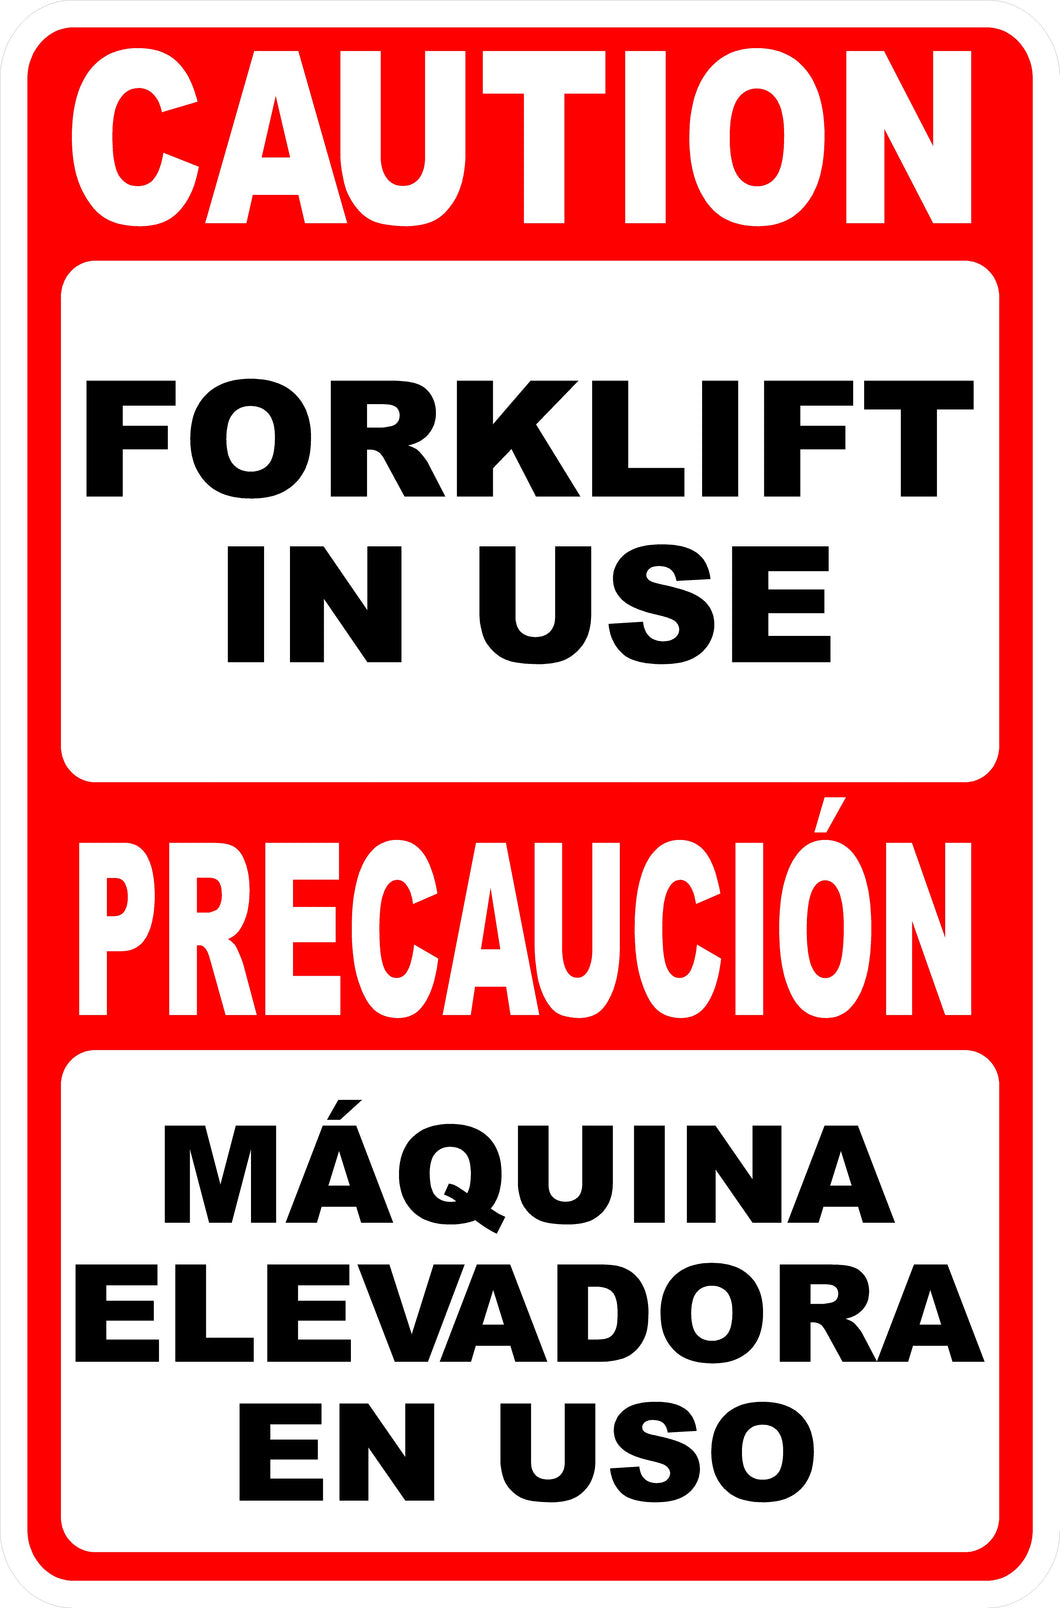 terrain forklift in spanish